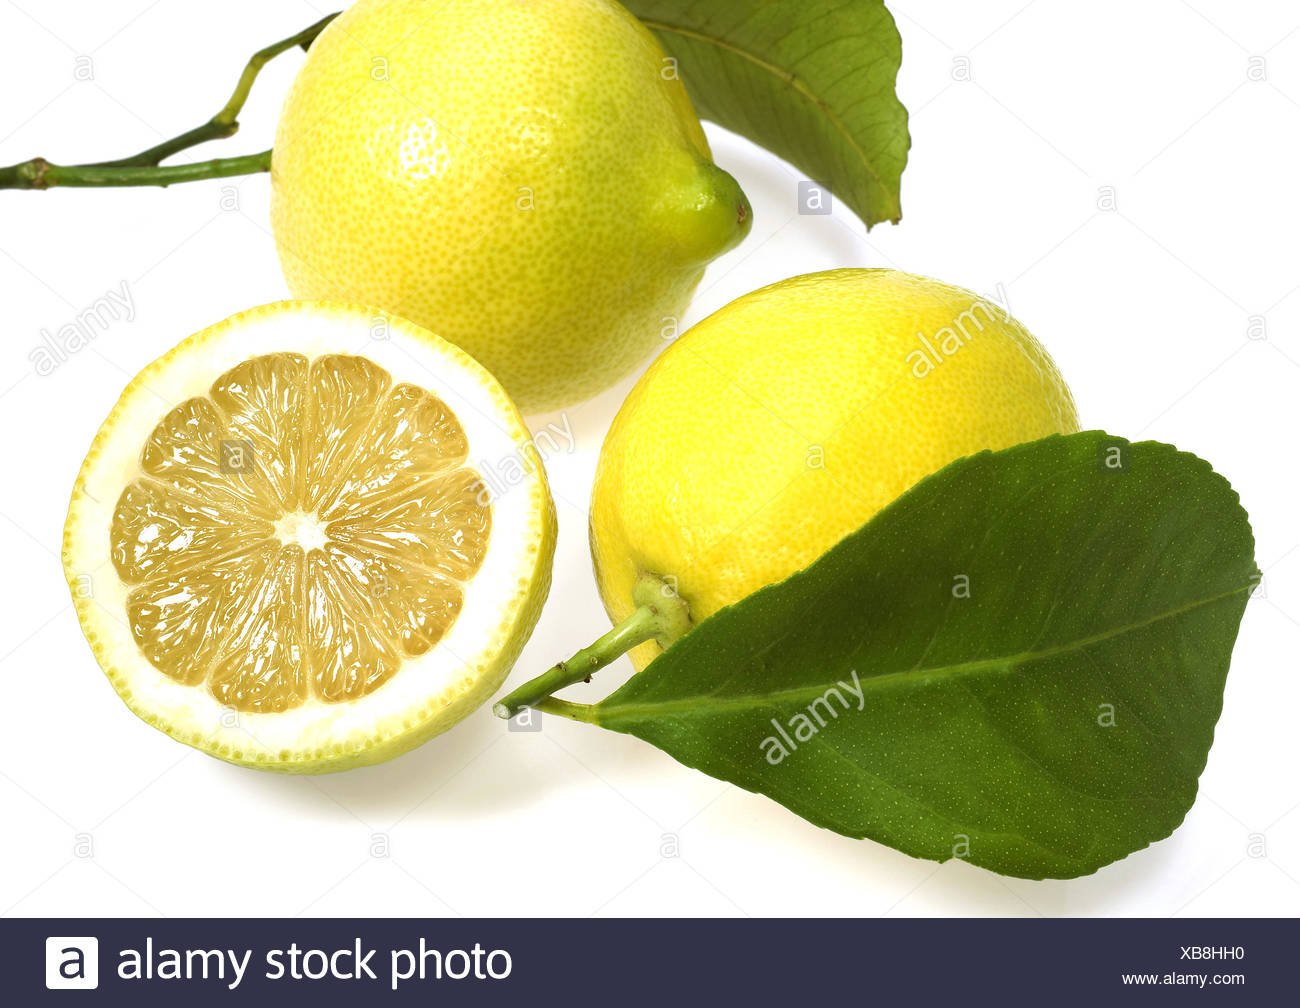 Yellow Lemon, citrus limonum, Fruit against White Background Stock ...